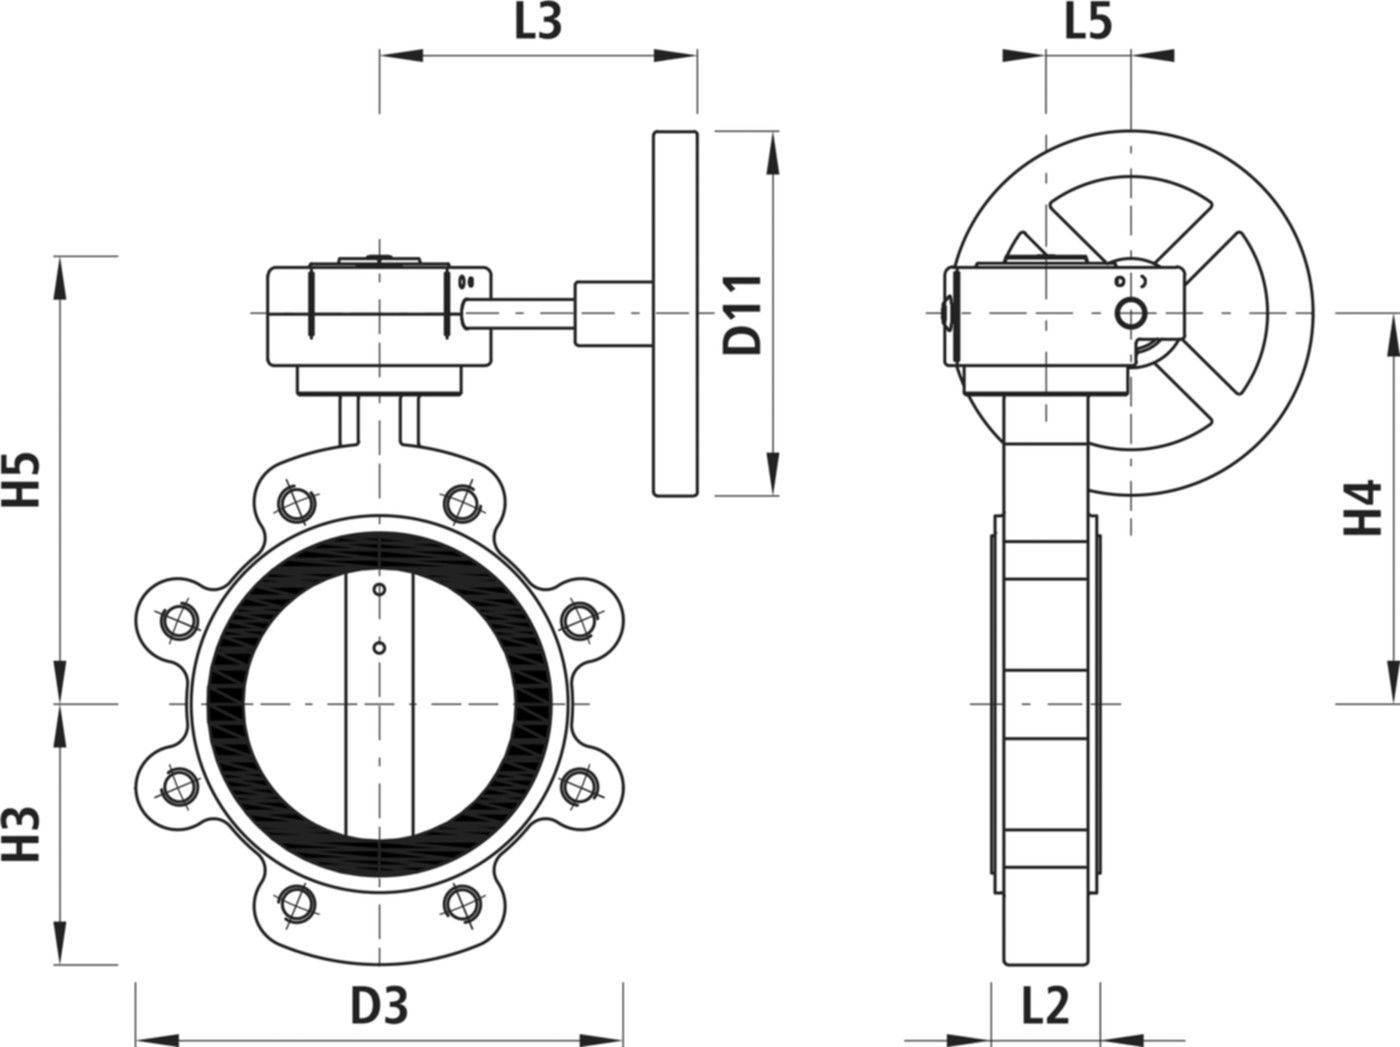 Absperrklappe mit Getriebe Typ LI 9943 DN 50 PN 16 - Hawle Absperrklappen